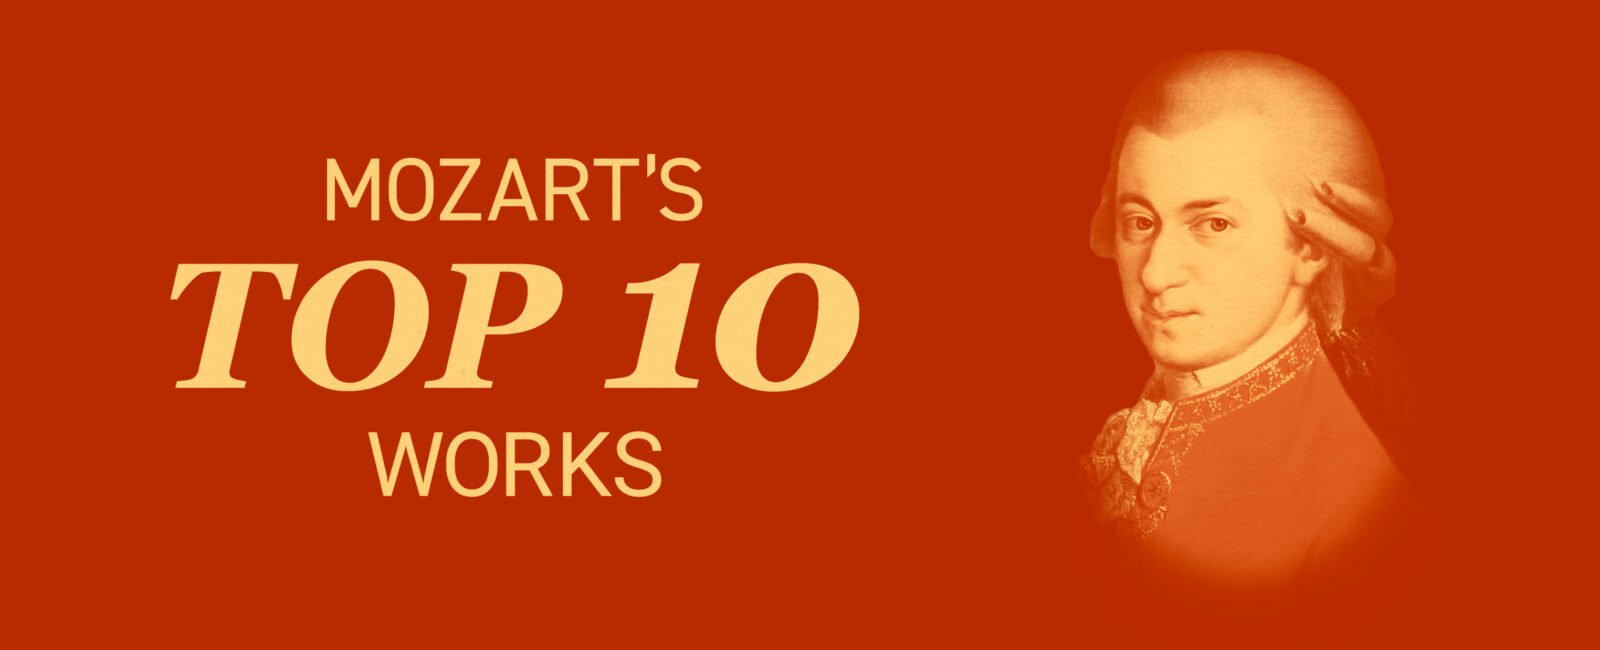 mozart's top 10